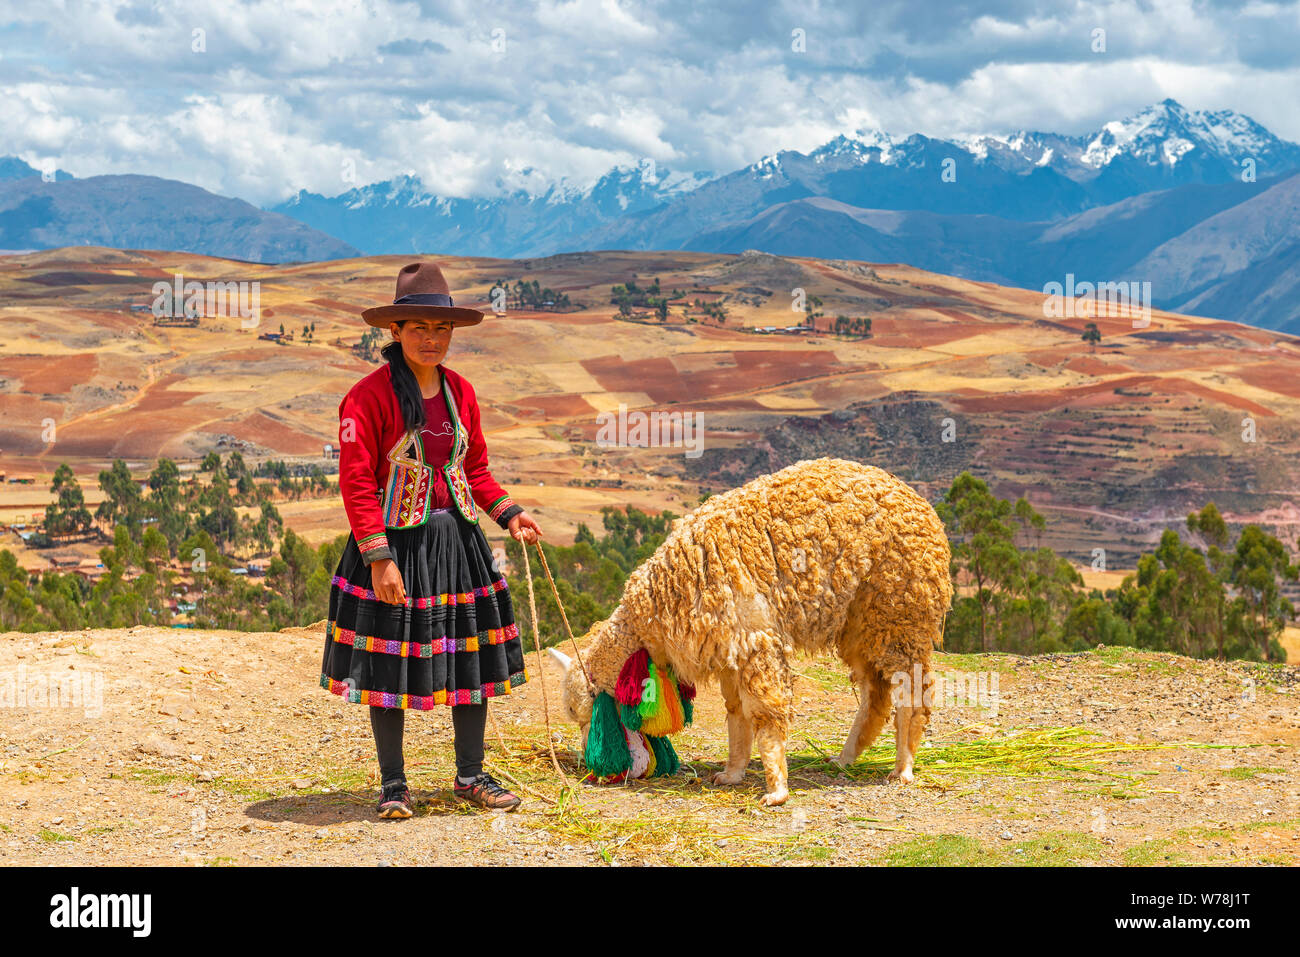 Indigeni Quechua donna con un llama mangiare paglia e la Valle Sacra degli Inca in background nei pressi di Cusco, Perù. Foto Stock